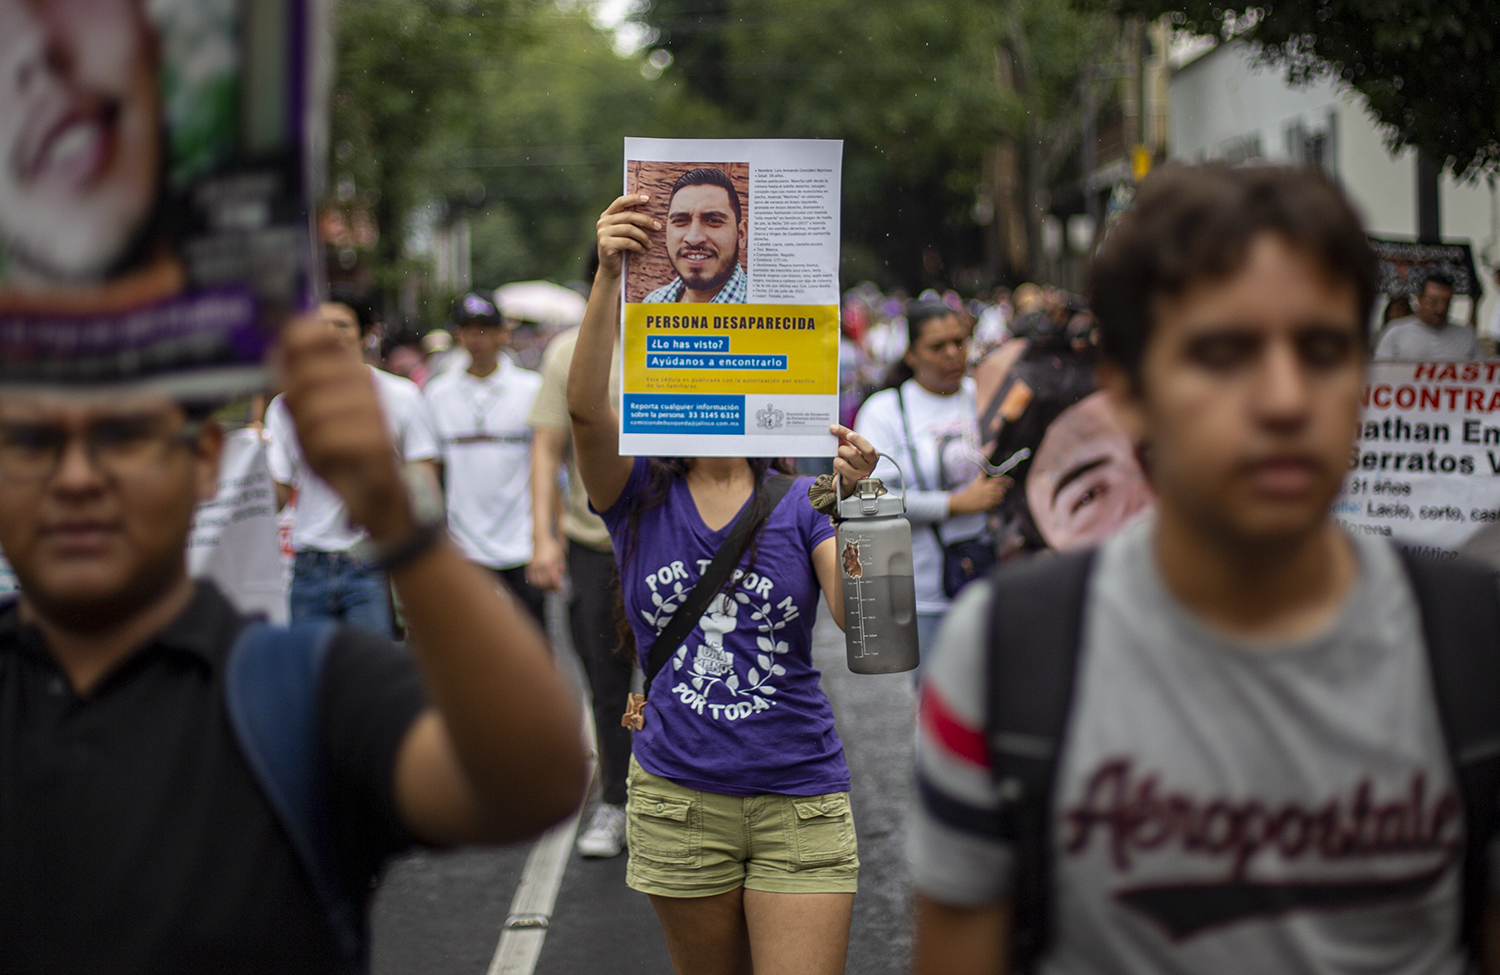 Galería fotográfica: Marchan en Guadalajara, Jalisco por  el Día Internacional de las Víctimas de Desapariciones Forzadas